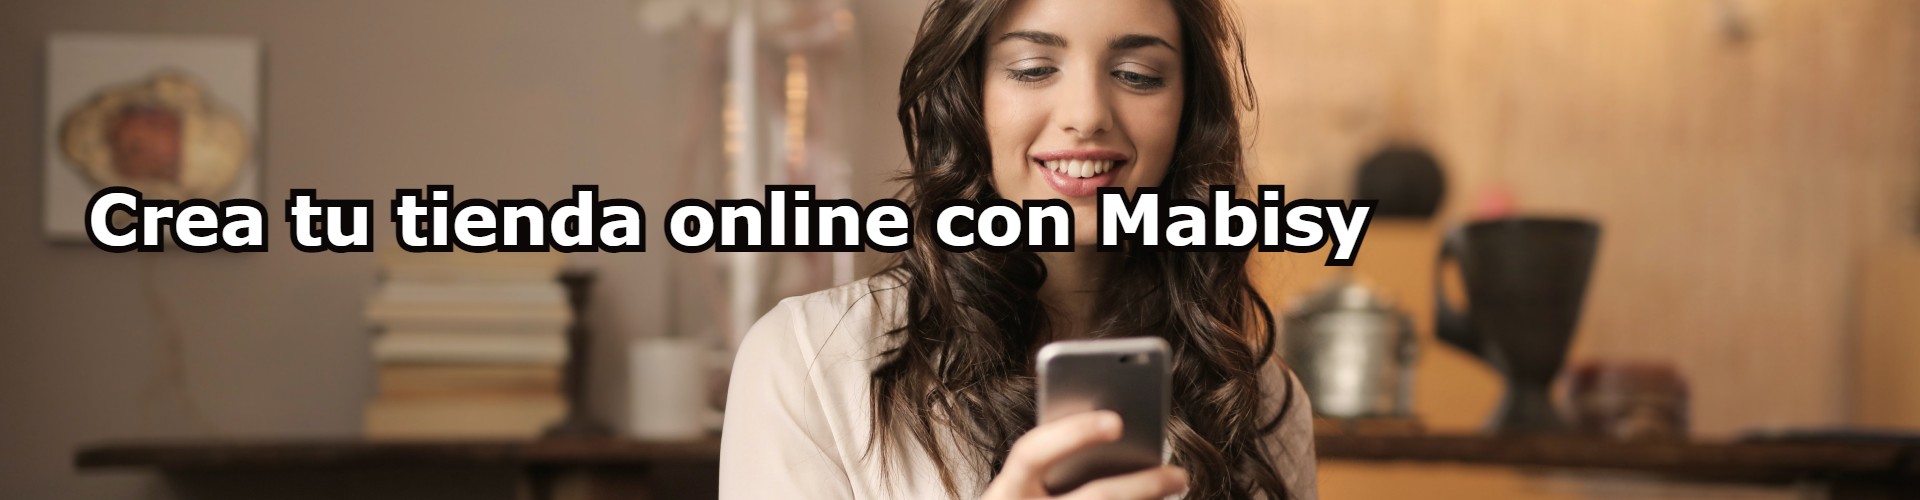 tu online con | Blog Ecommaster.es